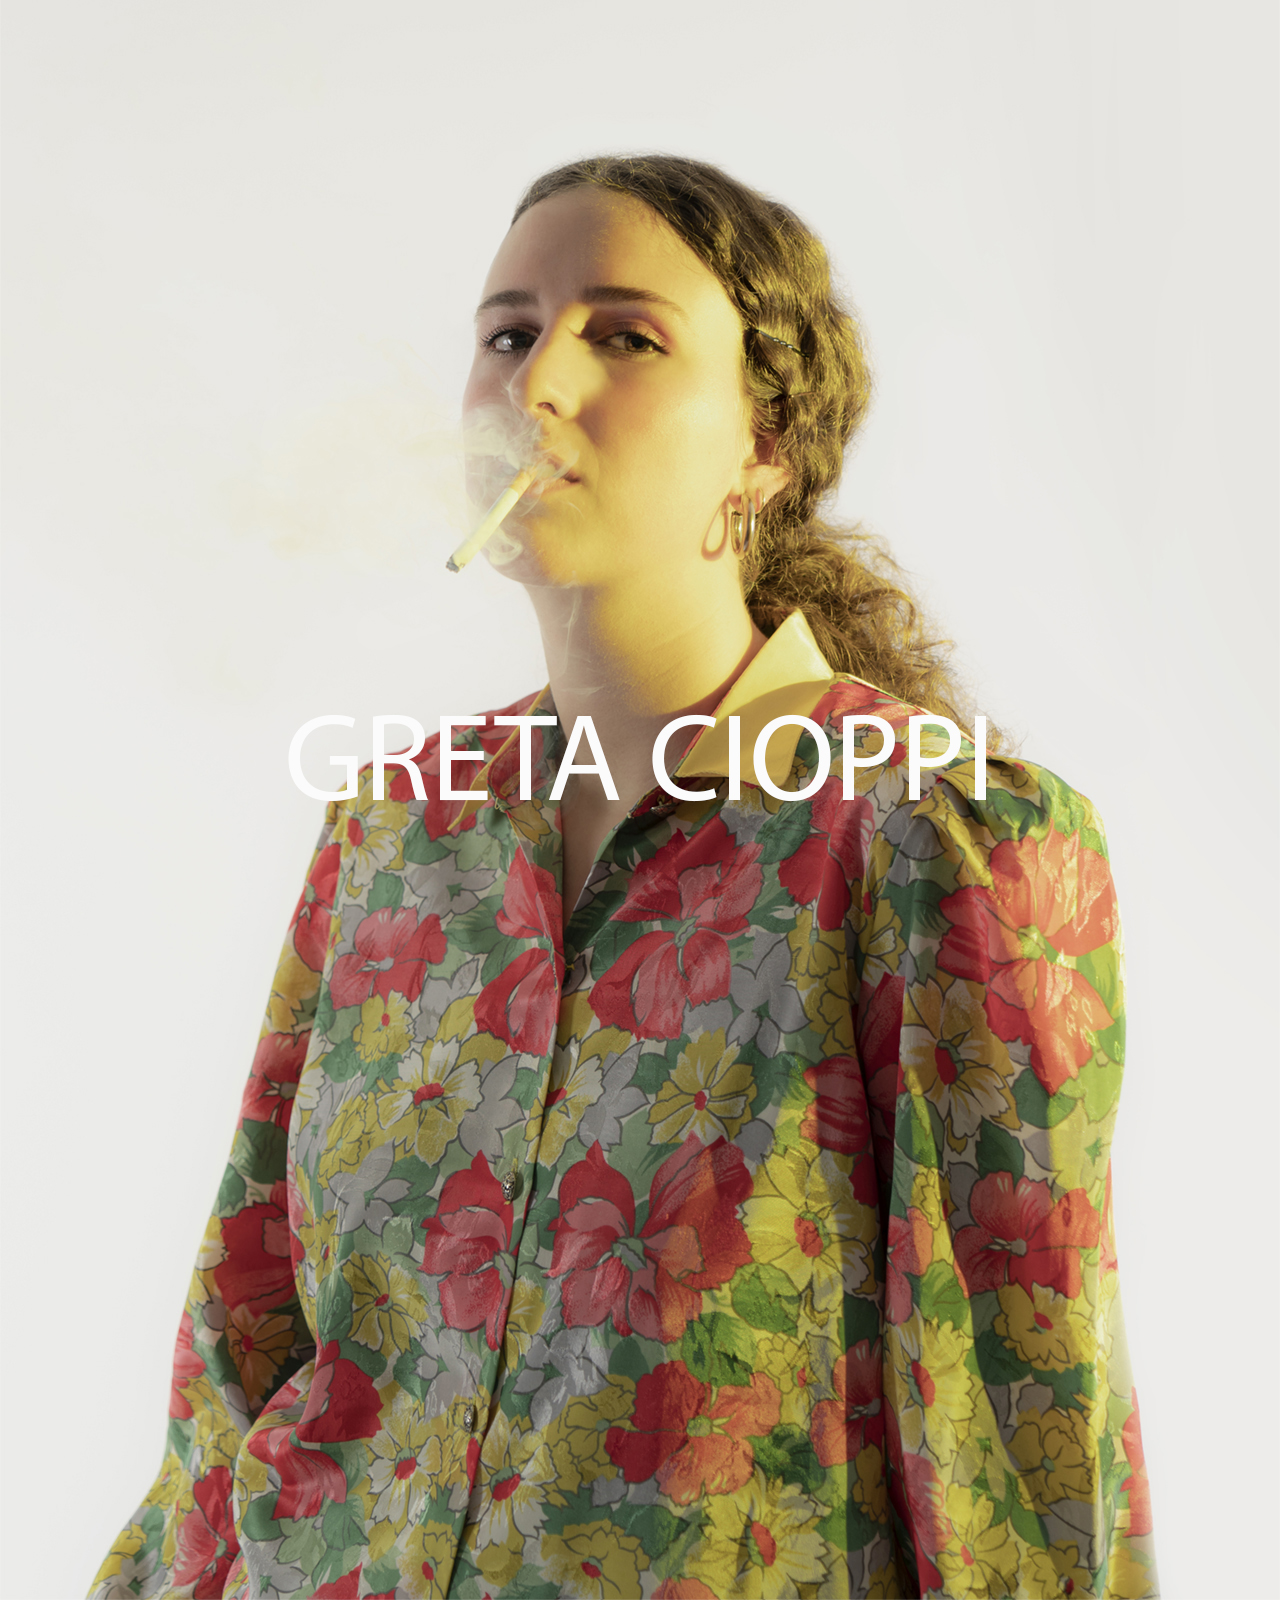 Greta Cioppi by Andrea Reina